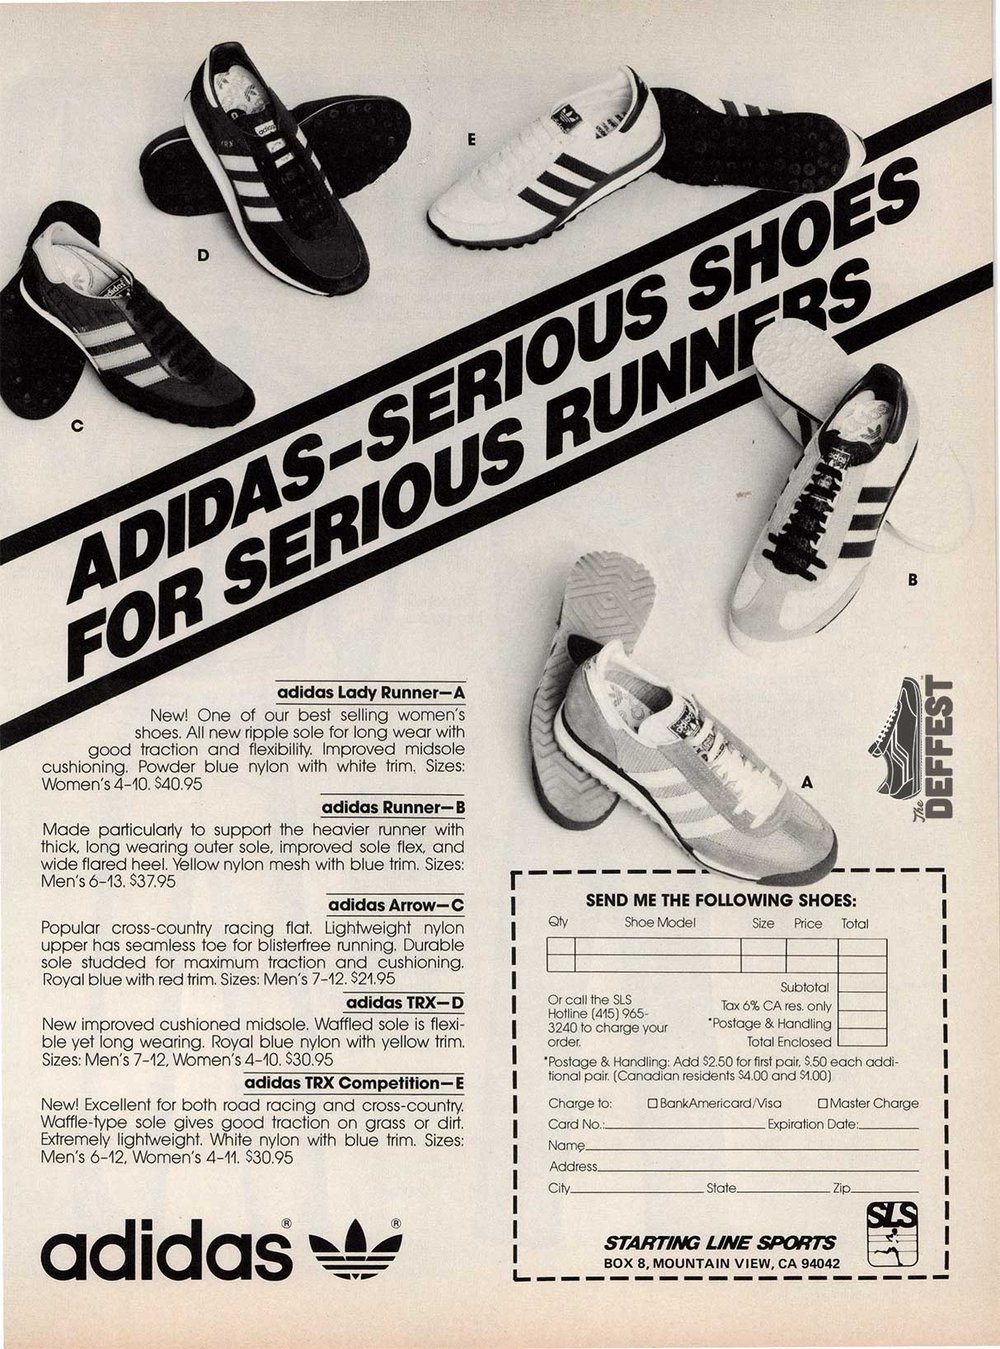 Lágrima El otro día Leer adidas running shoes — The Deffest®. A vintage and retro sneaker blog. —  Vintage Ads